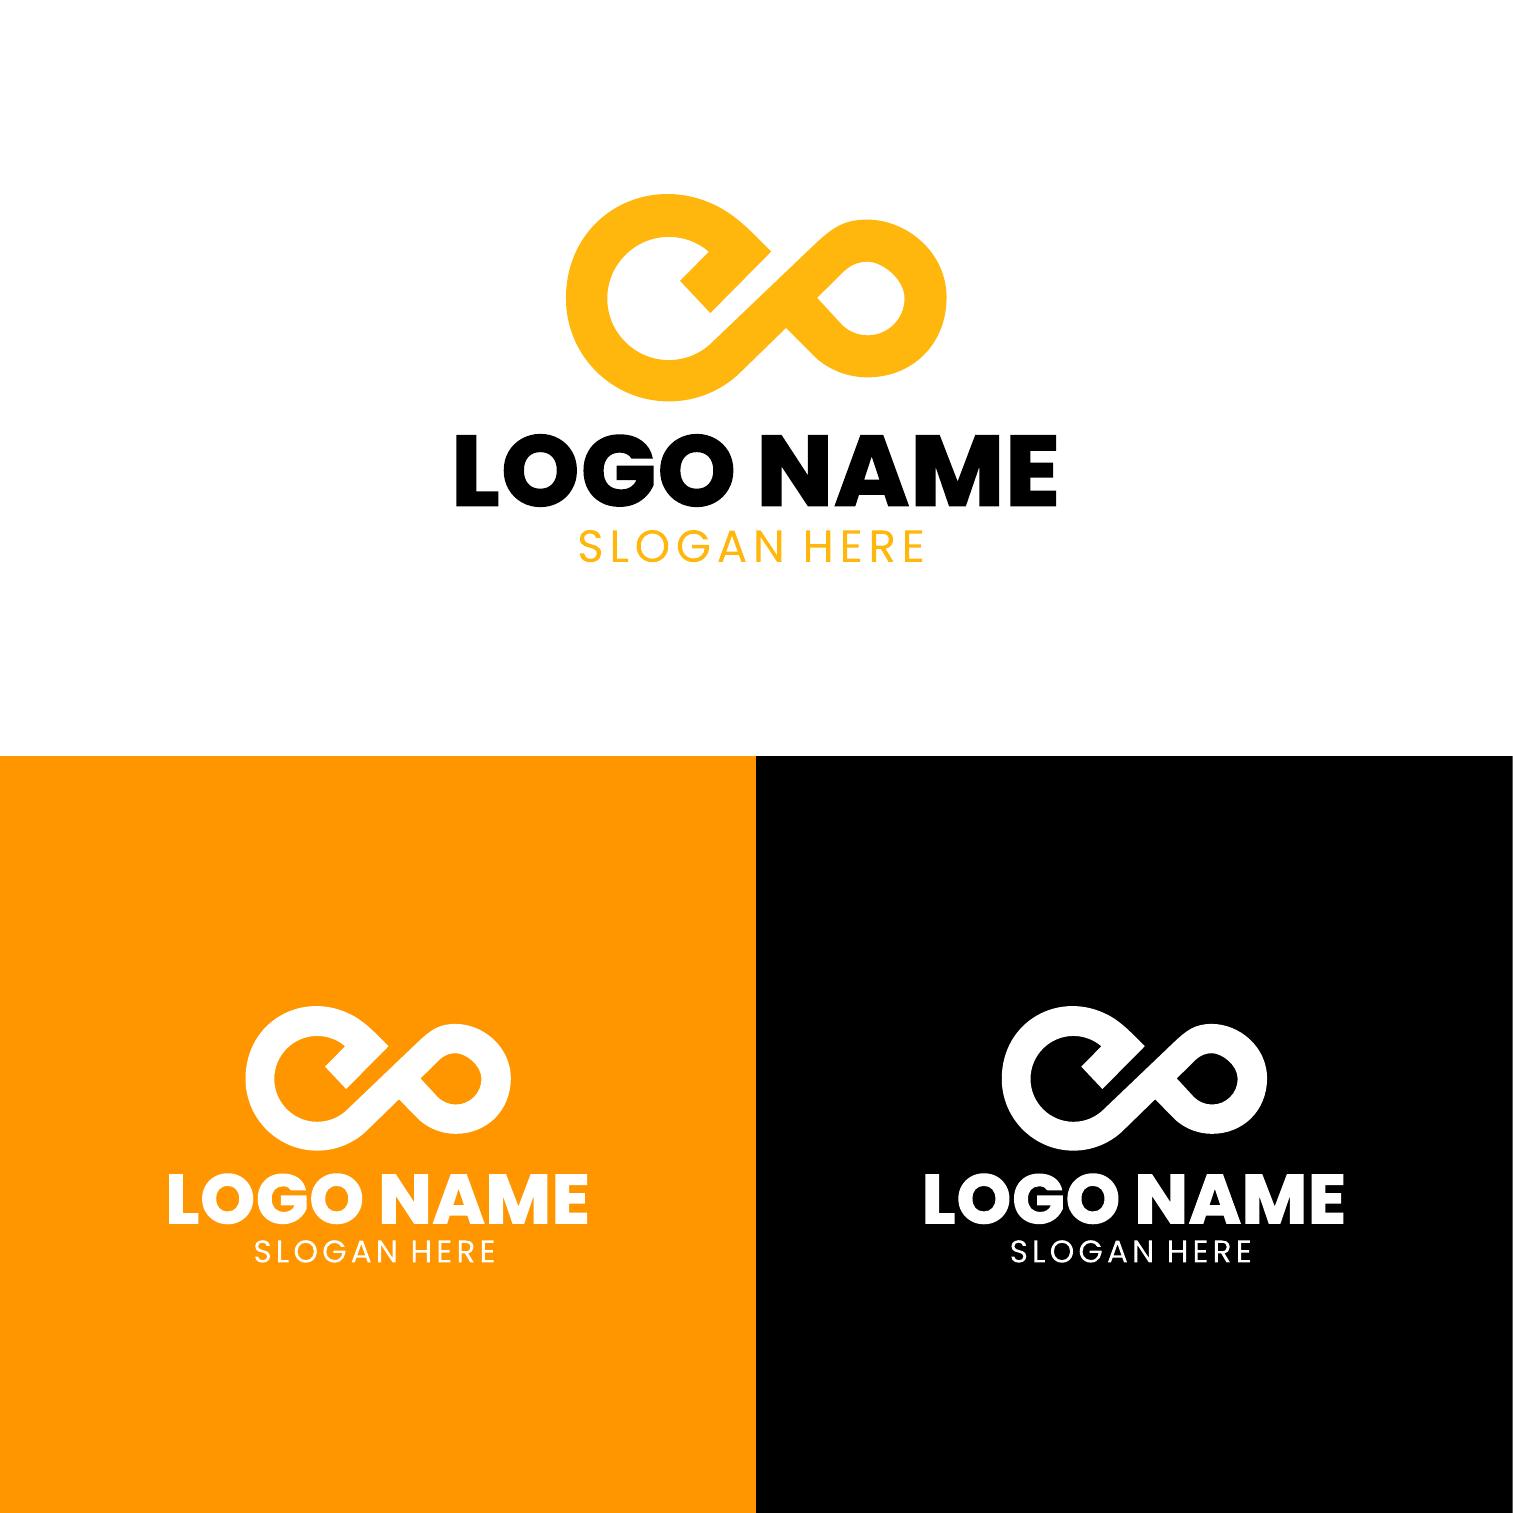 branding identity corporate vector logo g design 03.eps 45